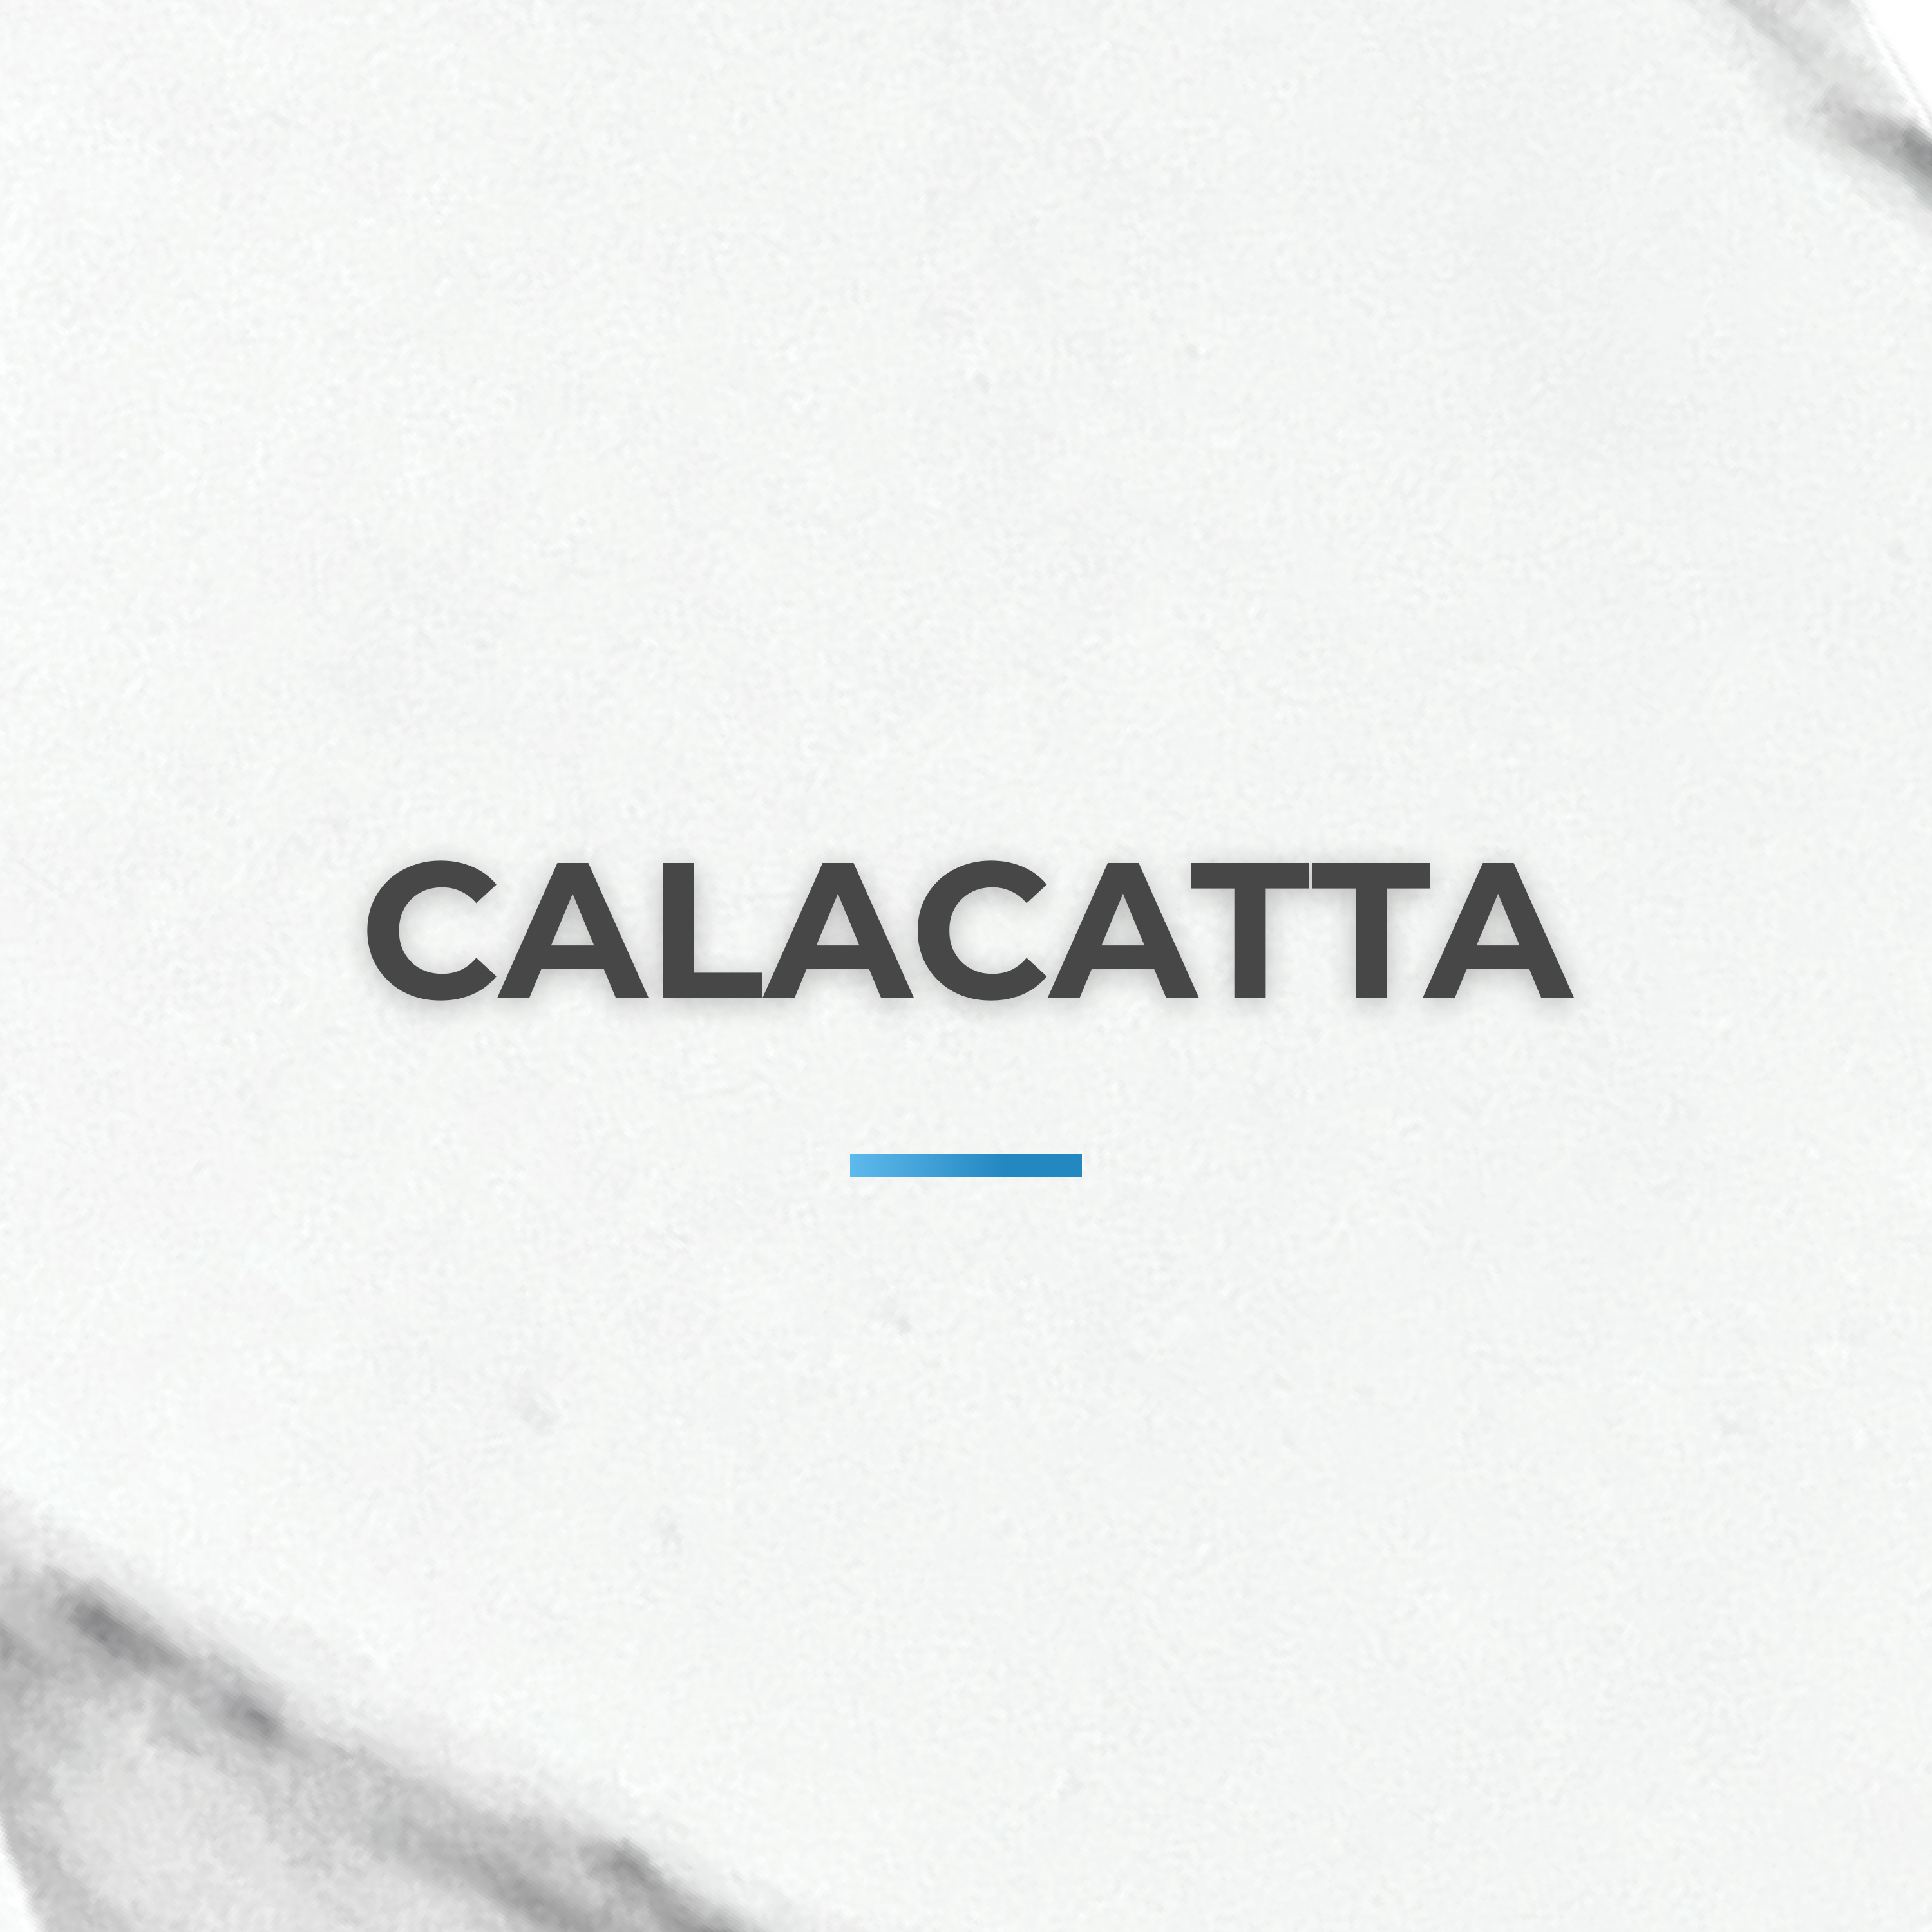 Calacatta collection